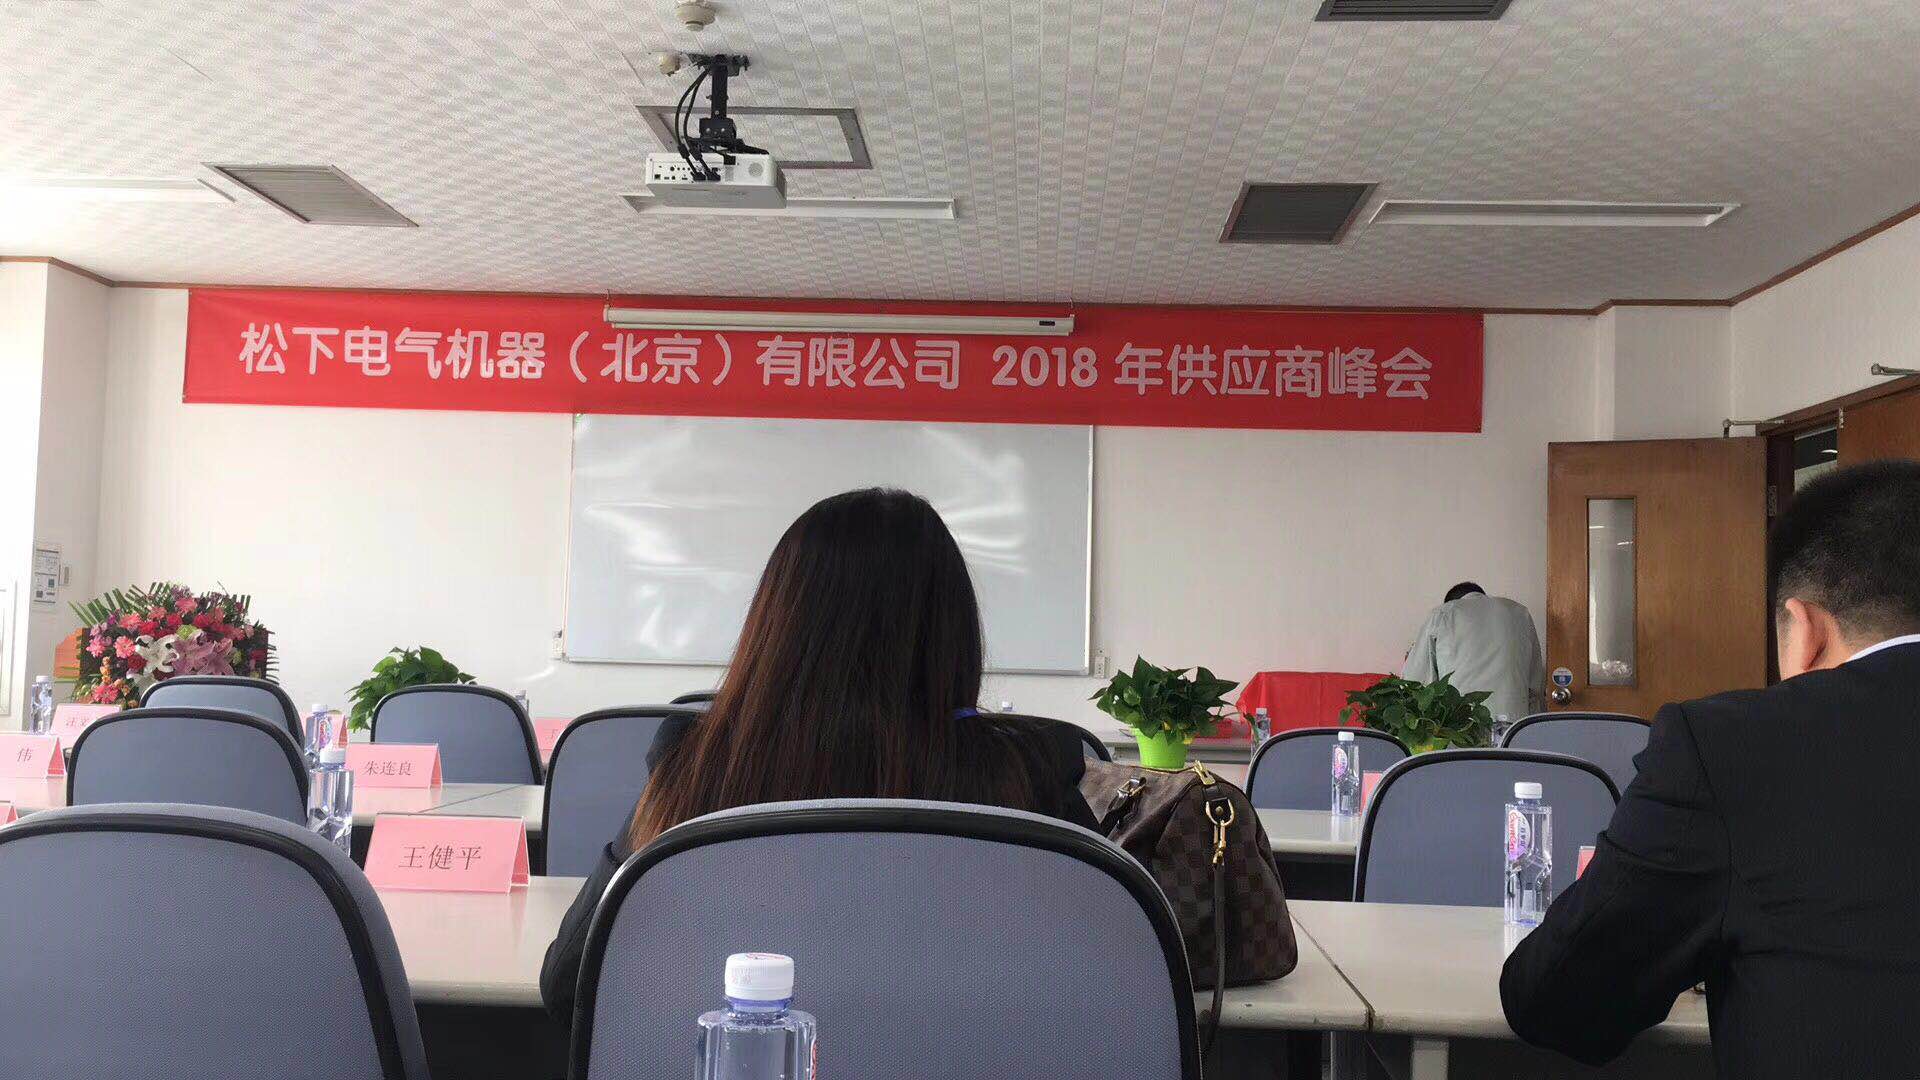 深圳市普林电路有限公司荣获松下电器2017年度最佳合作伙伴